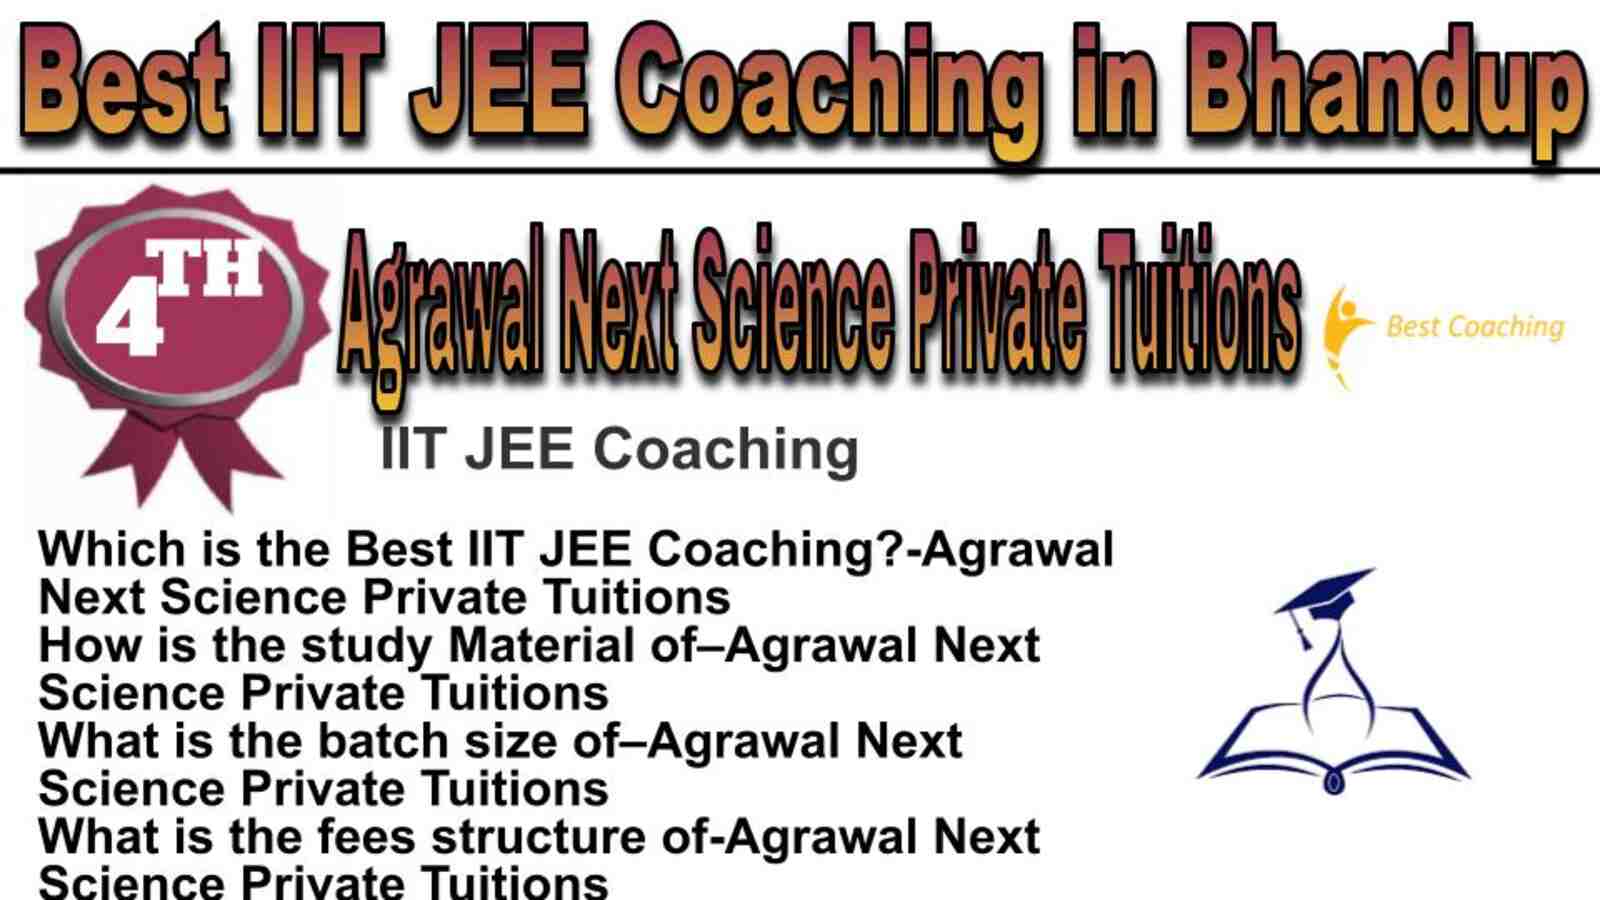 Rank 4 best IIT JEE coaching in Bhandup